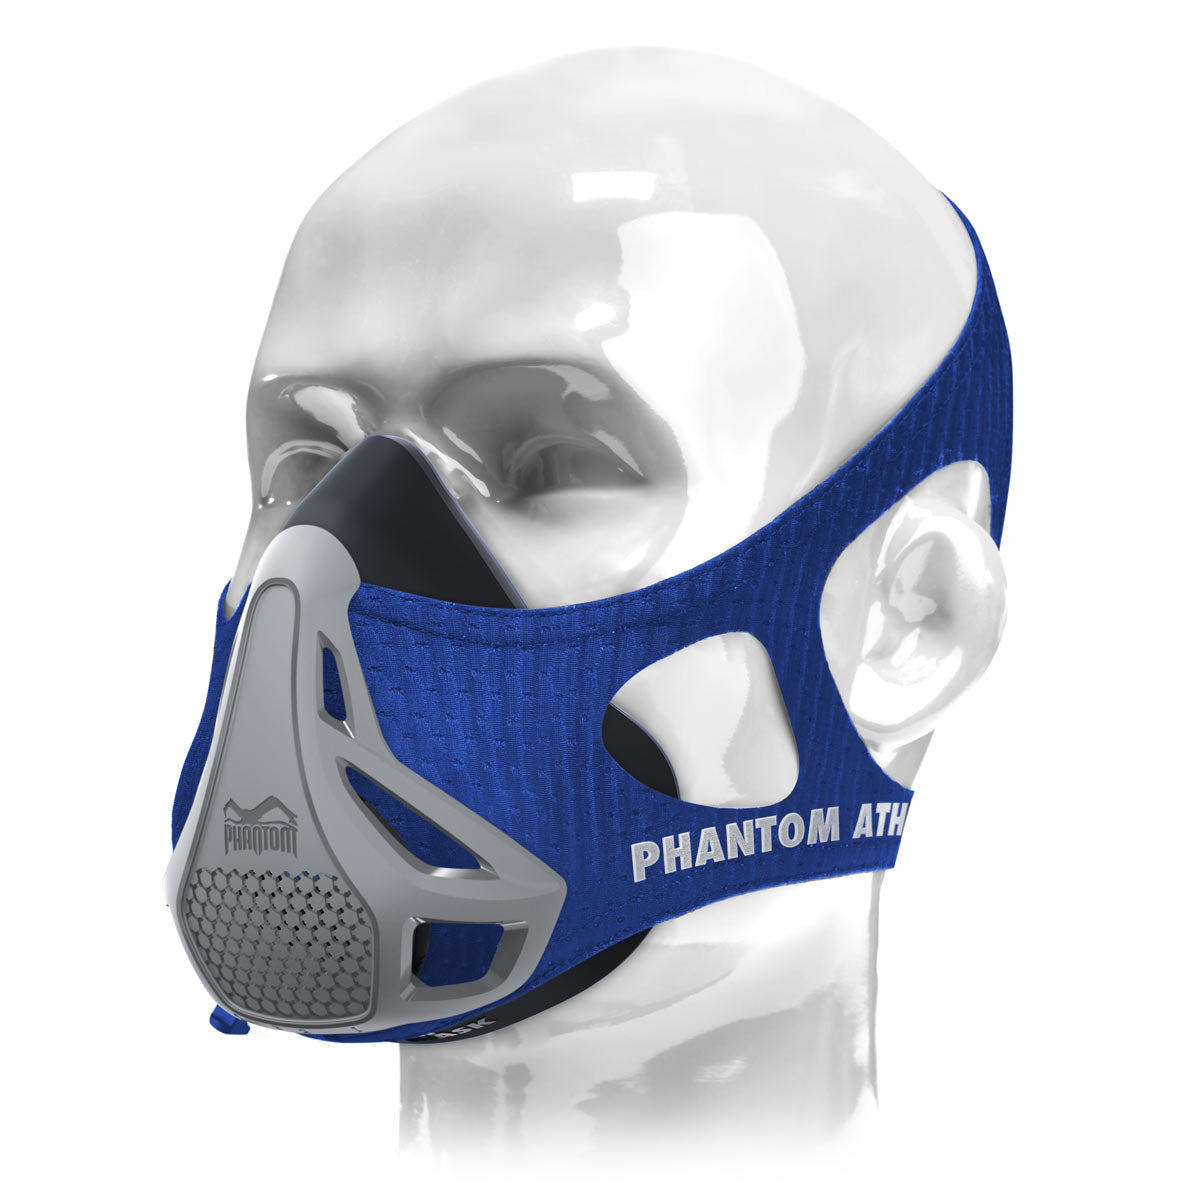 Maska za trening Phantom u misterioznoj verziji. Neka vas boja iznenadi. Idealna sprava za trening za podizanje vaše kondicije na viši nivo.